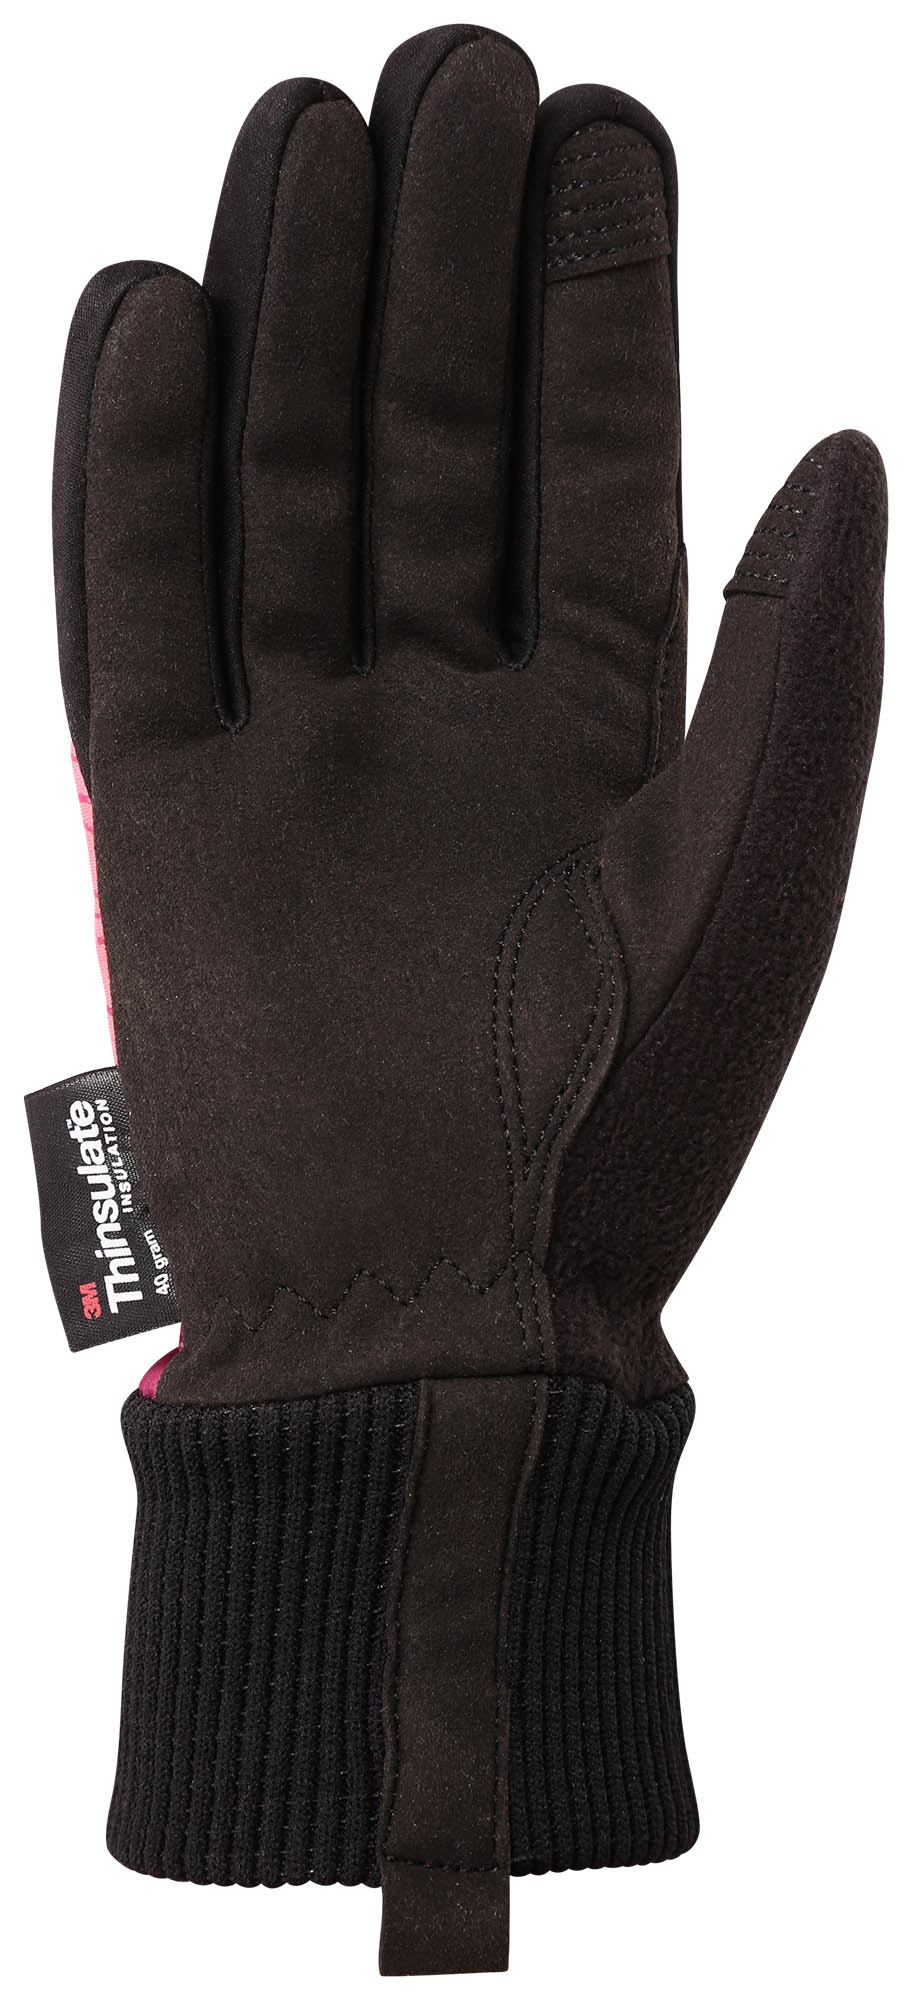 Zimní multisport rukavice